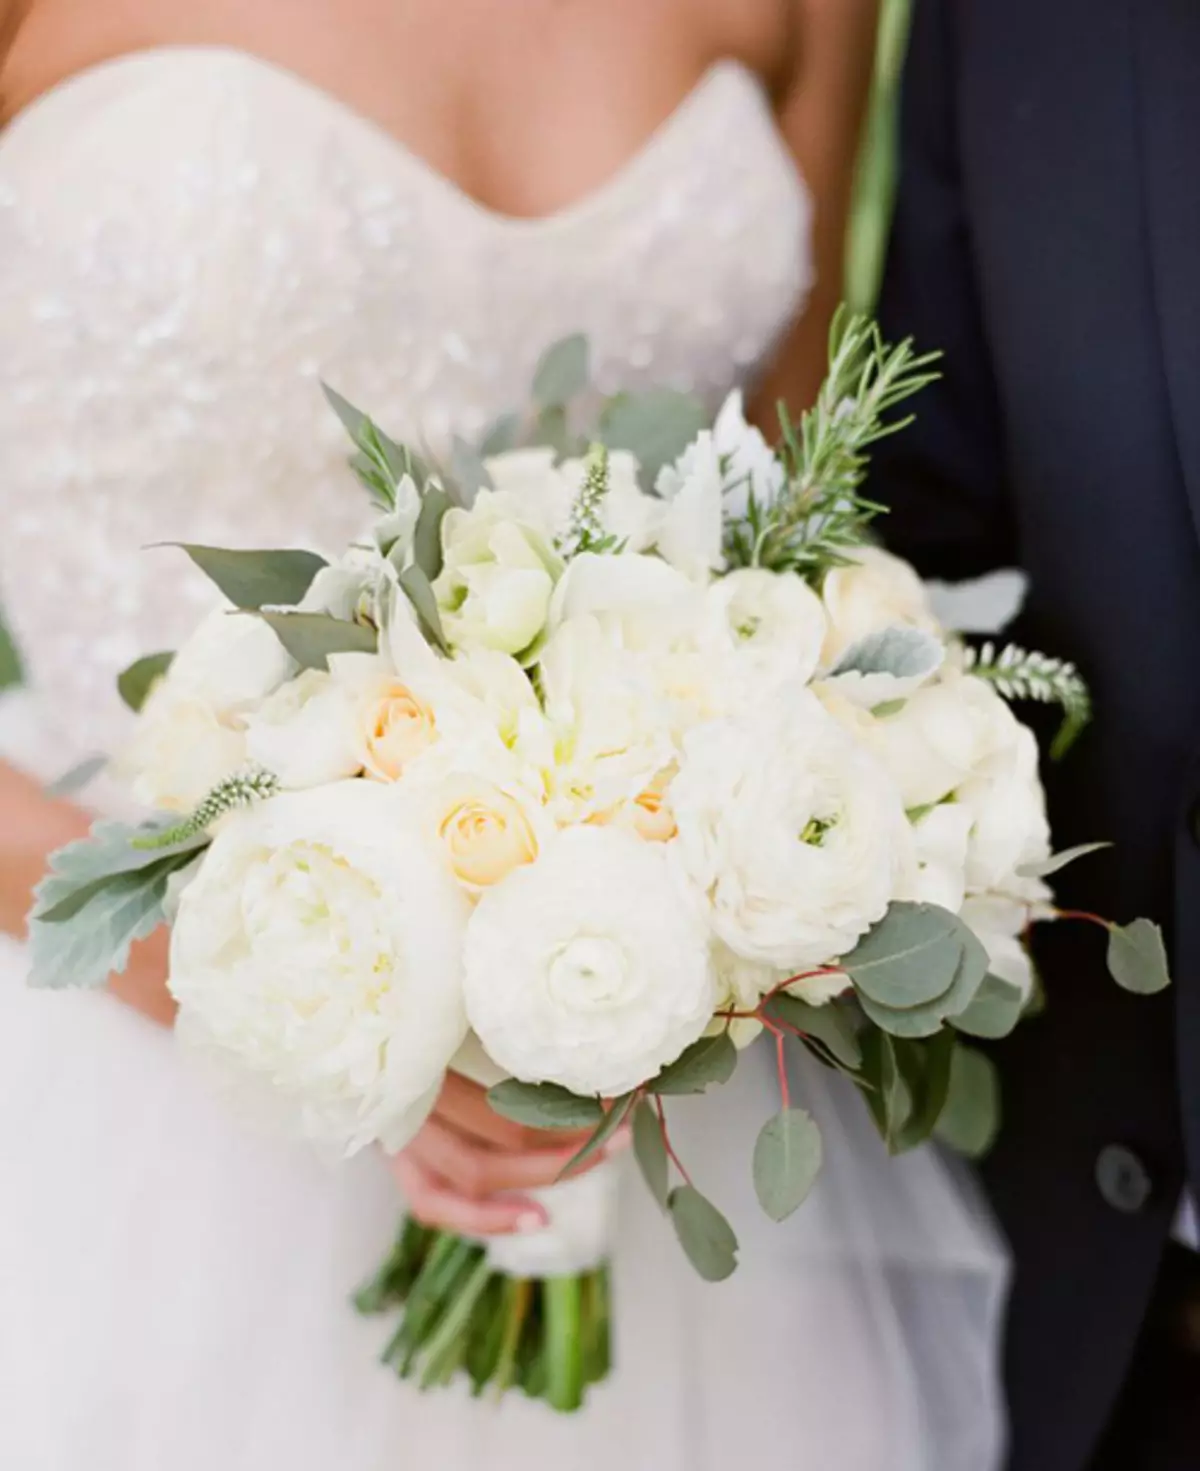 모란의 결혼식 꽃다발 (108 사진) : 흰색 수문과 빨간 칼라와의 조합, 결혼식 꽃다발의 부르고뉴, 라일락 및 자주색 꽃의 조합 8013_85